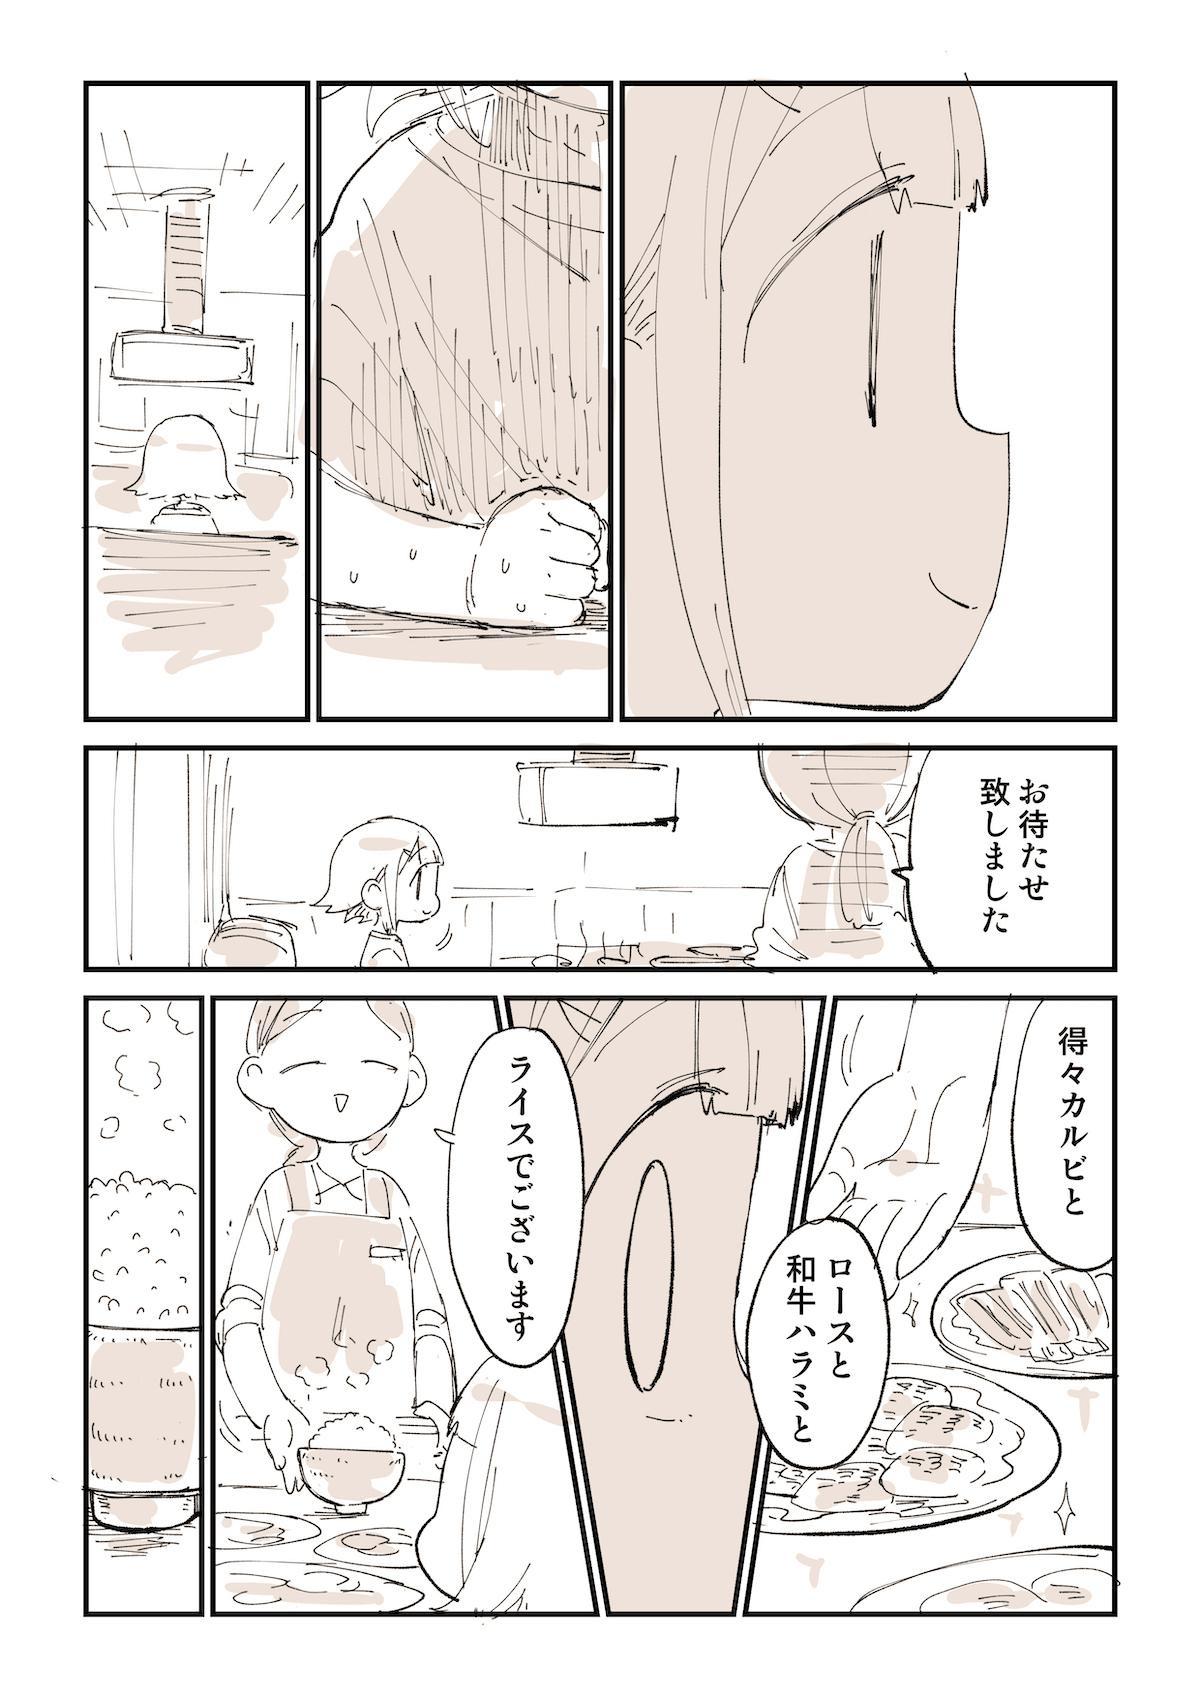 日本男児が絶対思ってること焼肉の話を漫画にしました_02